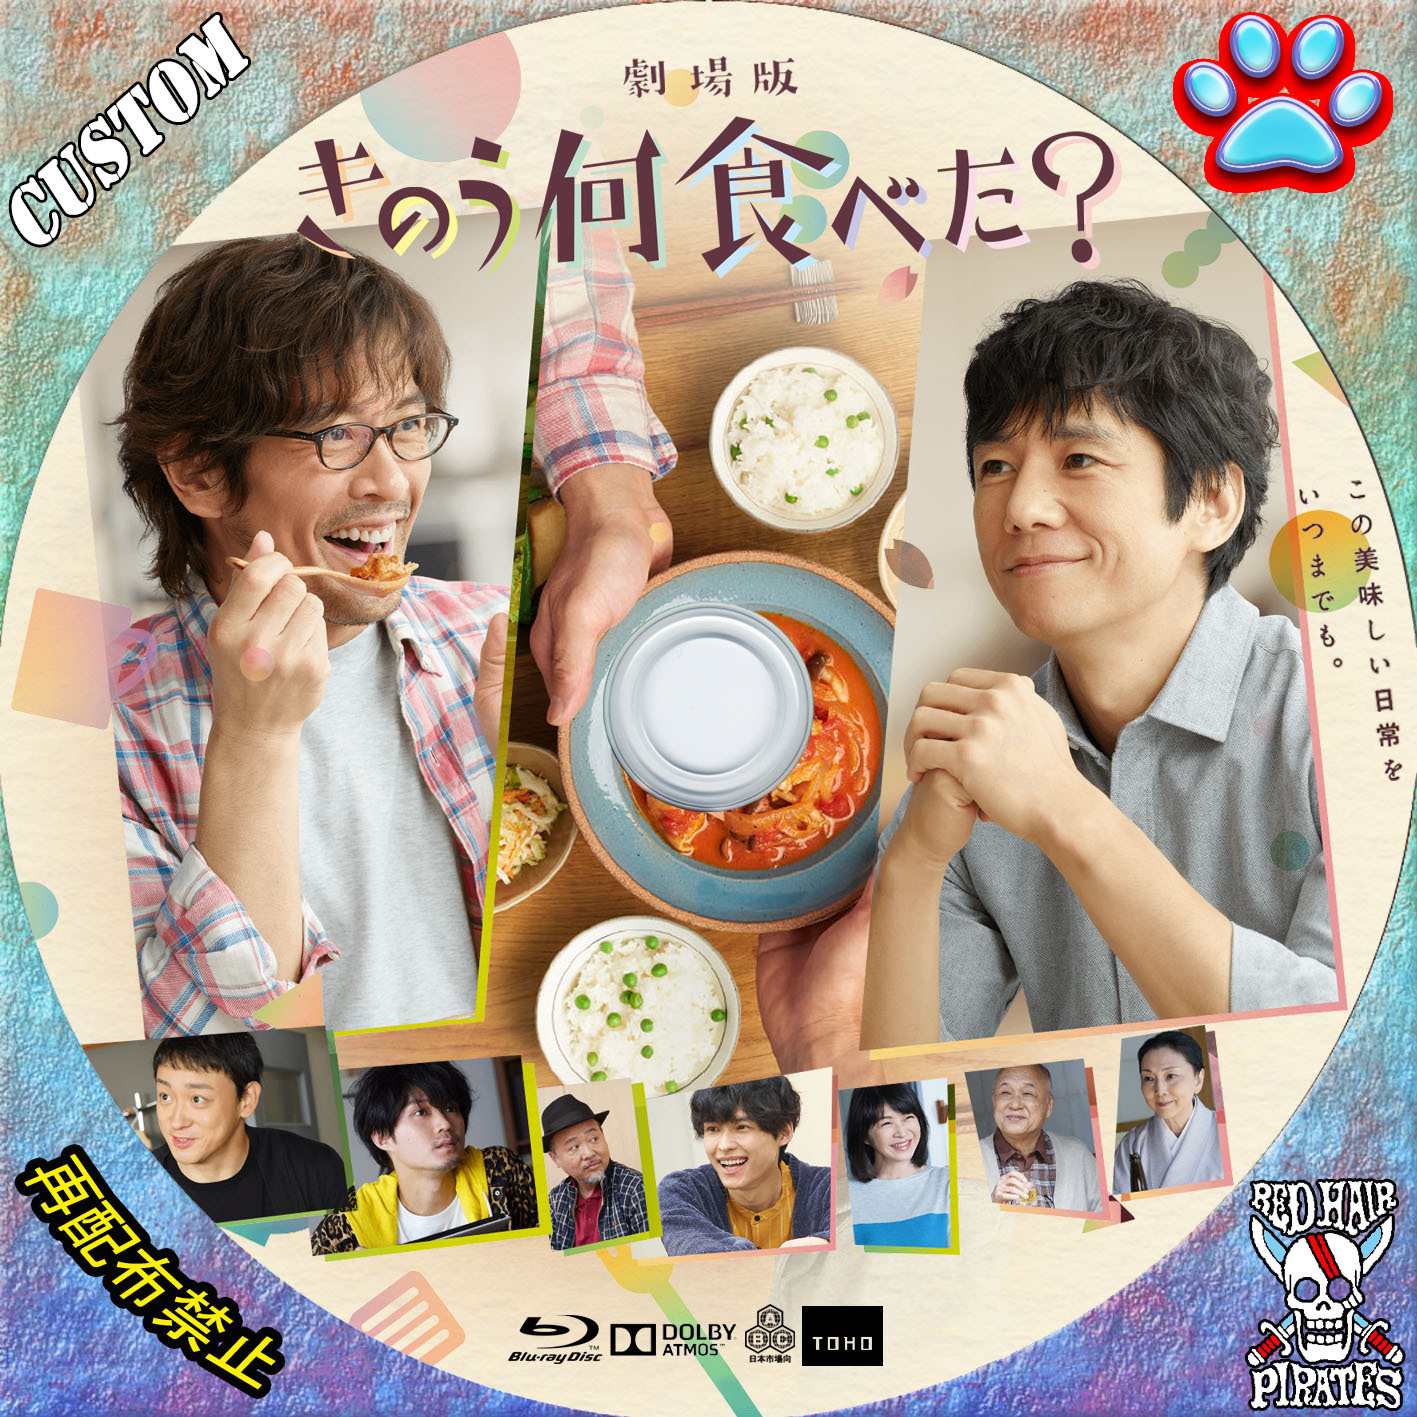 きのう何食べた? DVD 全巻 1-4巻 正月スペシャル 西島秀俊 内野聖陽 